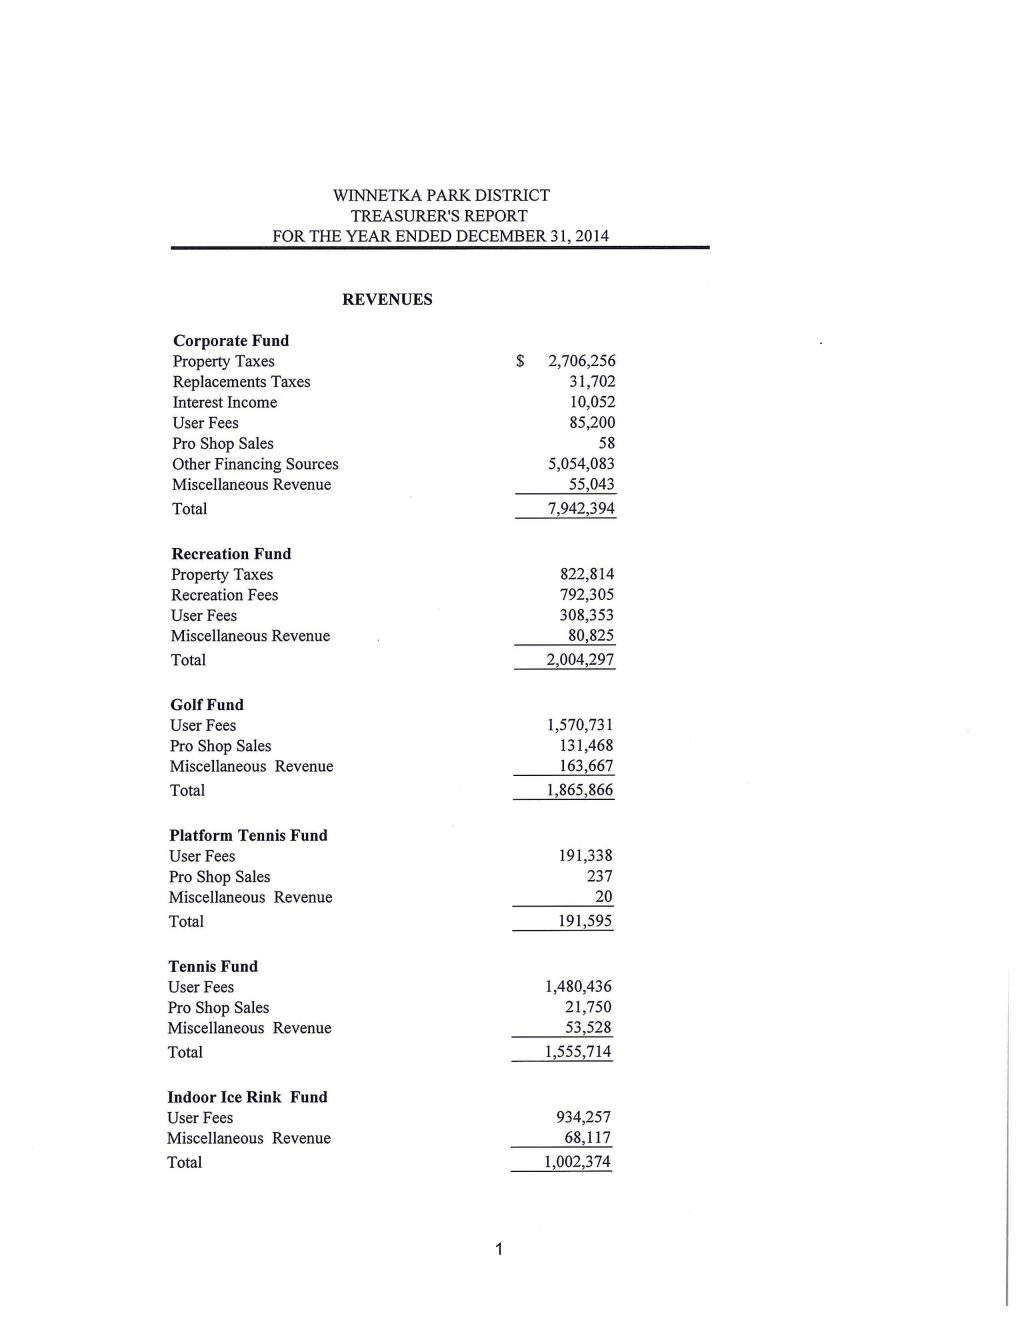 Treasurer's Report – Year Ended December 31, 2014